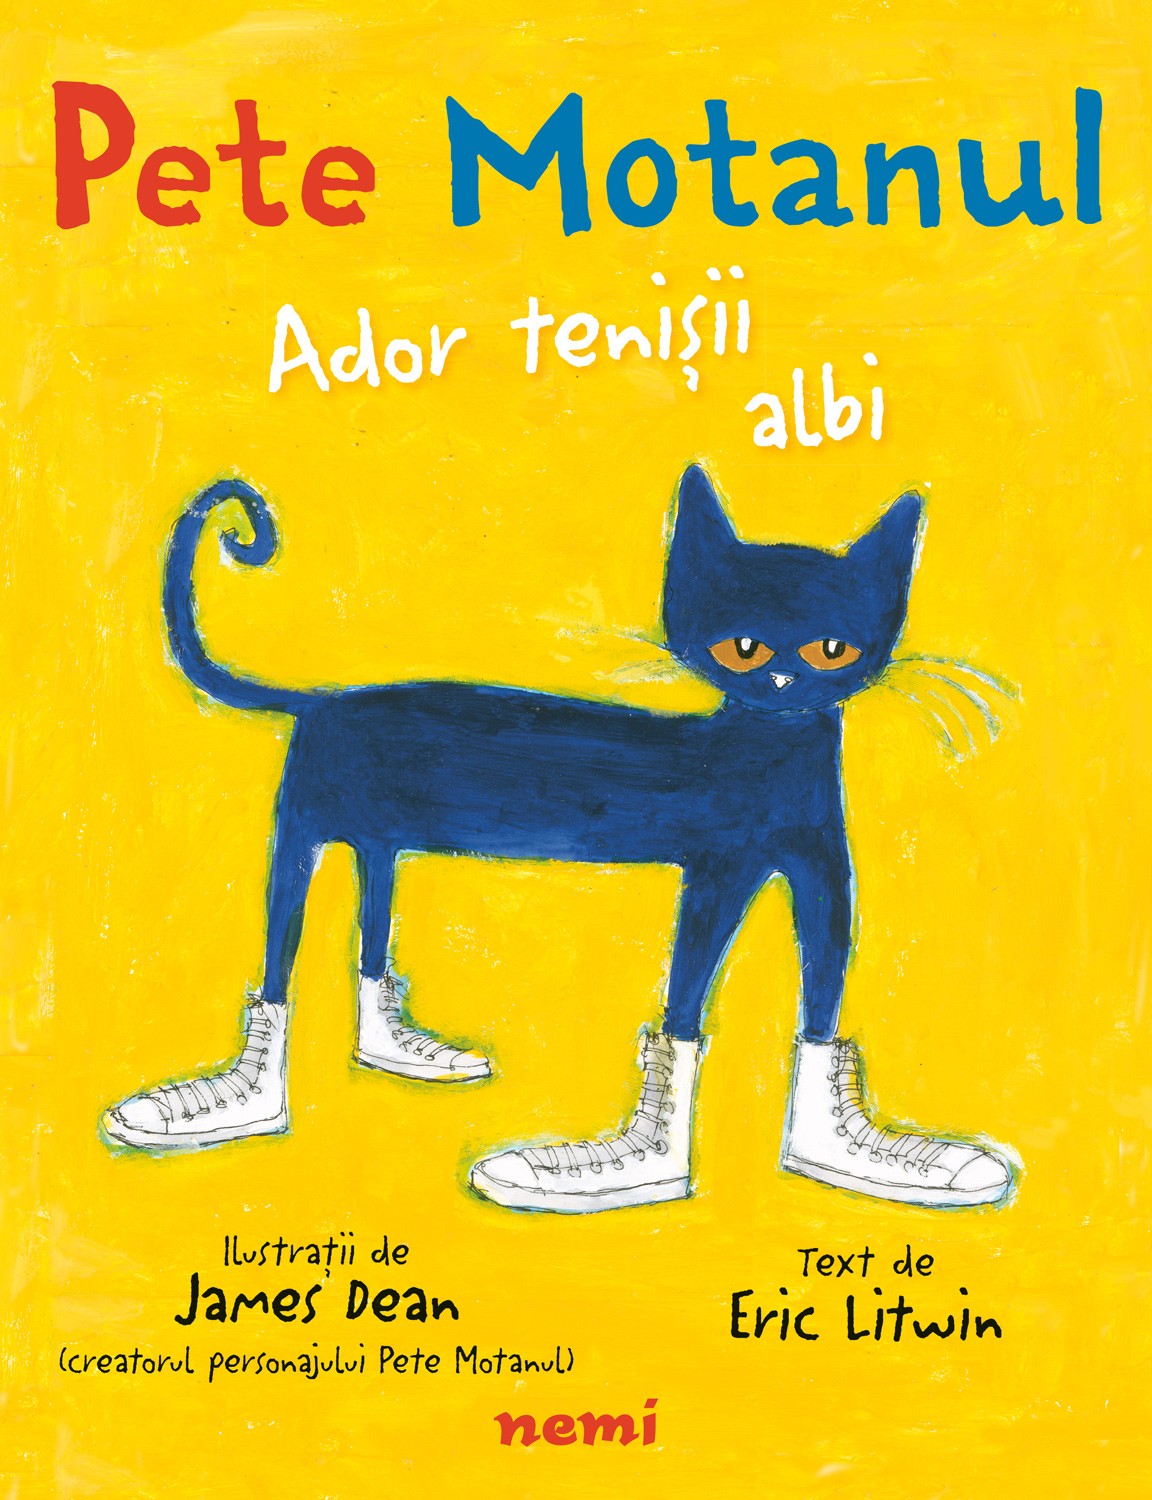 Coperta cărții: Pete Motanul. Ador tenisii albi - lonnieyoungblood.com